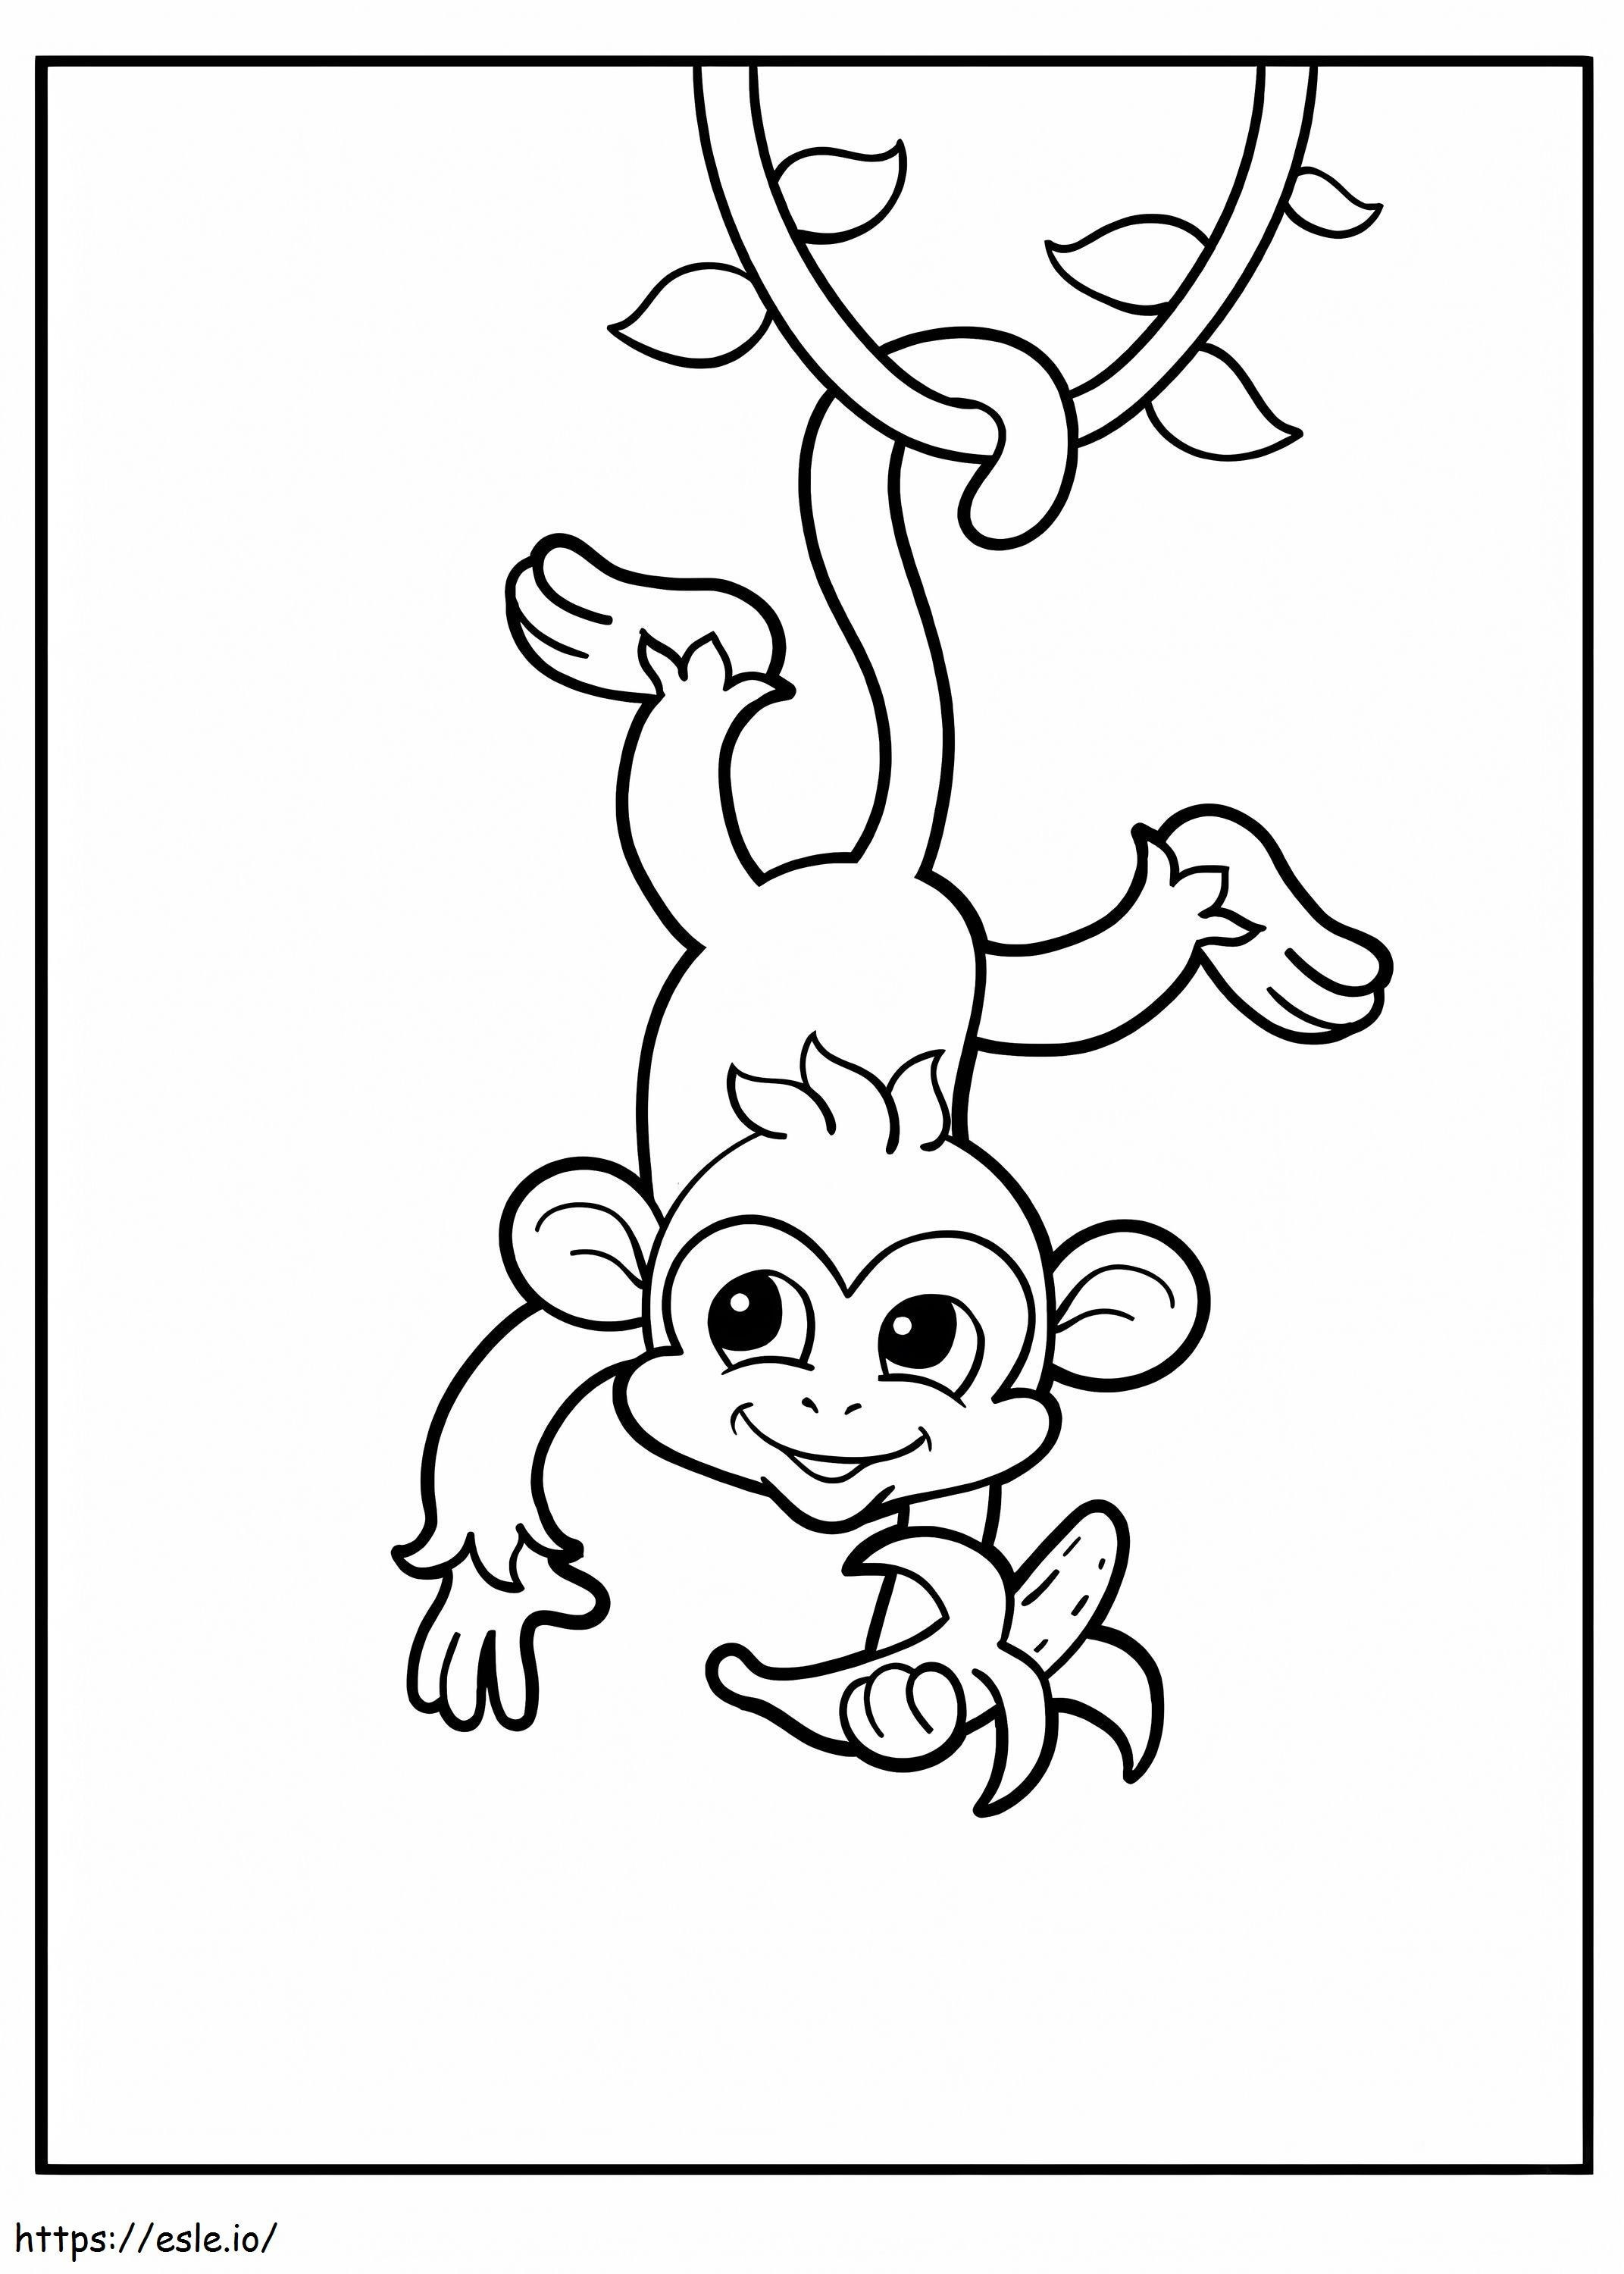 Maimuță ține banane și atârnă cu capul în jos de un copac de colorat